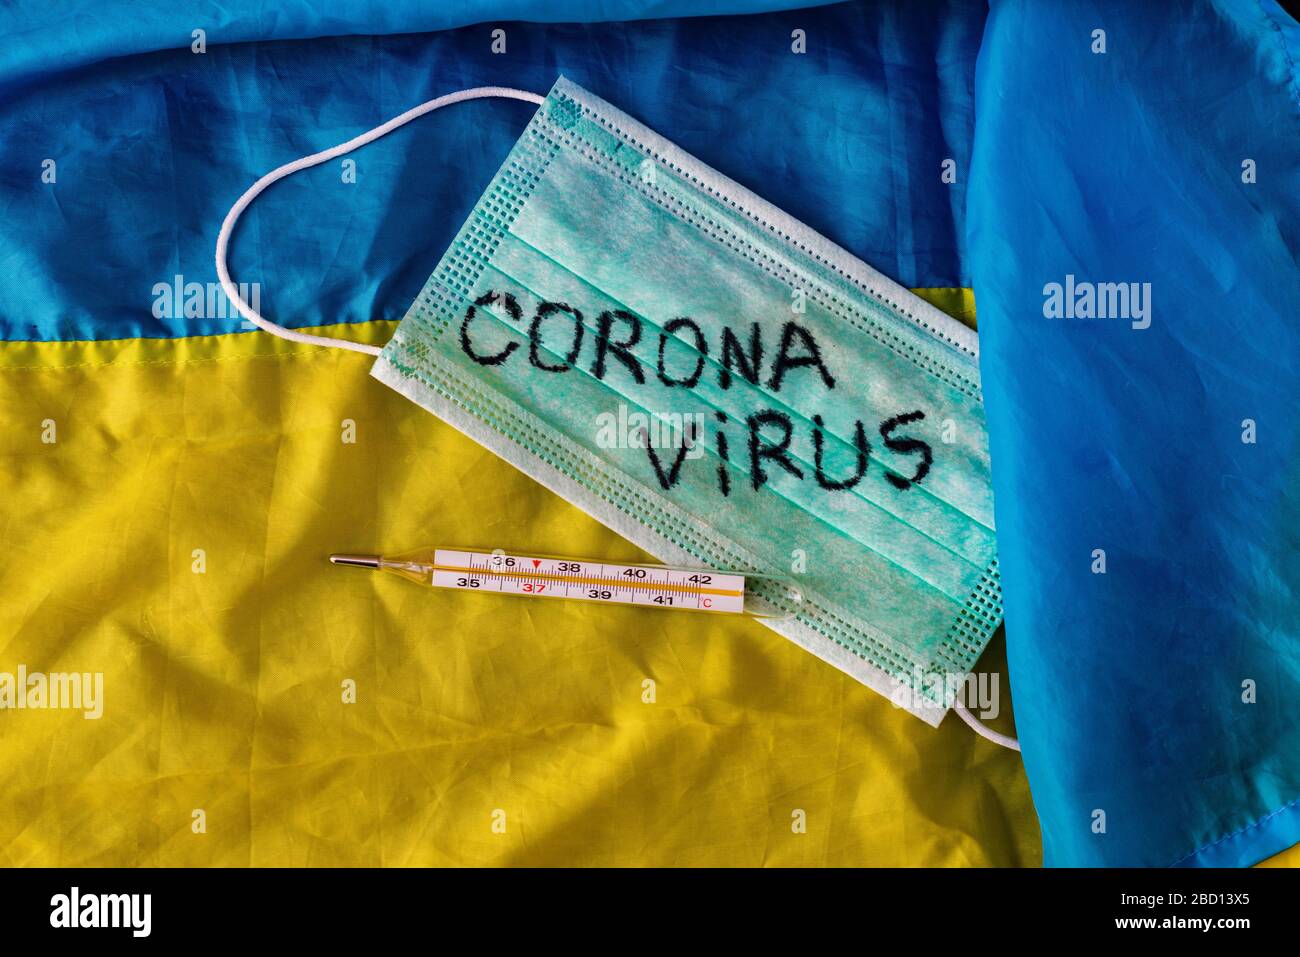 Concetto di coronavirus. Vista dall'alto di una maschera protettiva, termometro sulla bandiera dell'Ucraina. Nuova epidemia pandemica Foto Stock